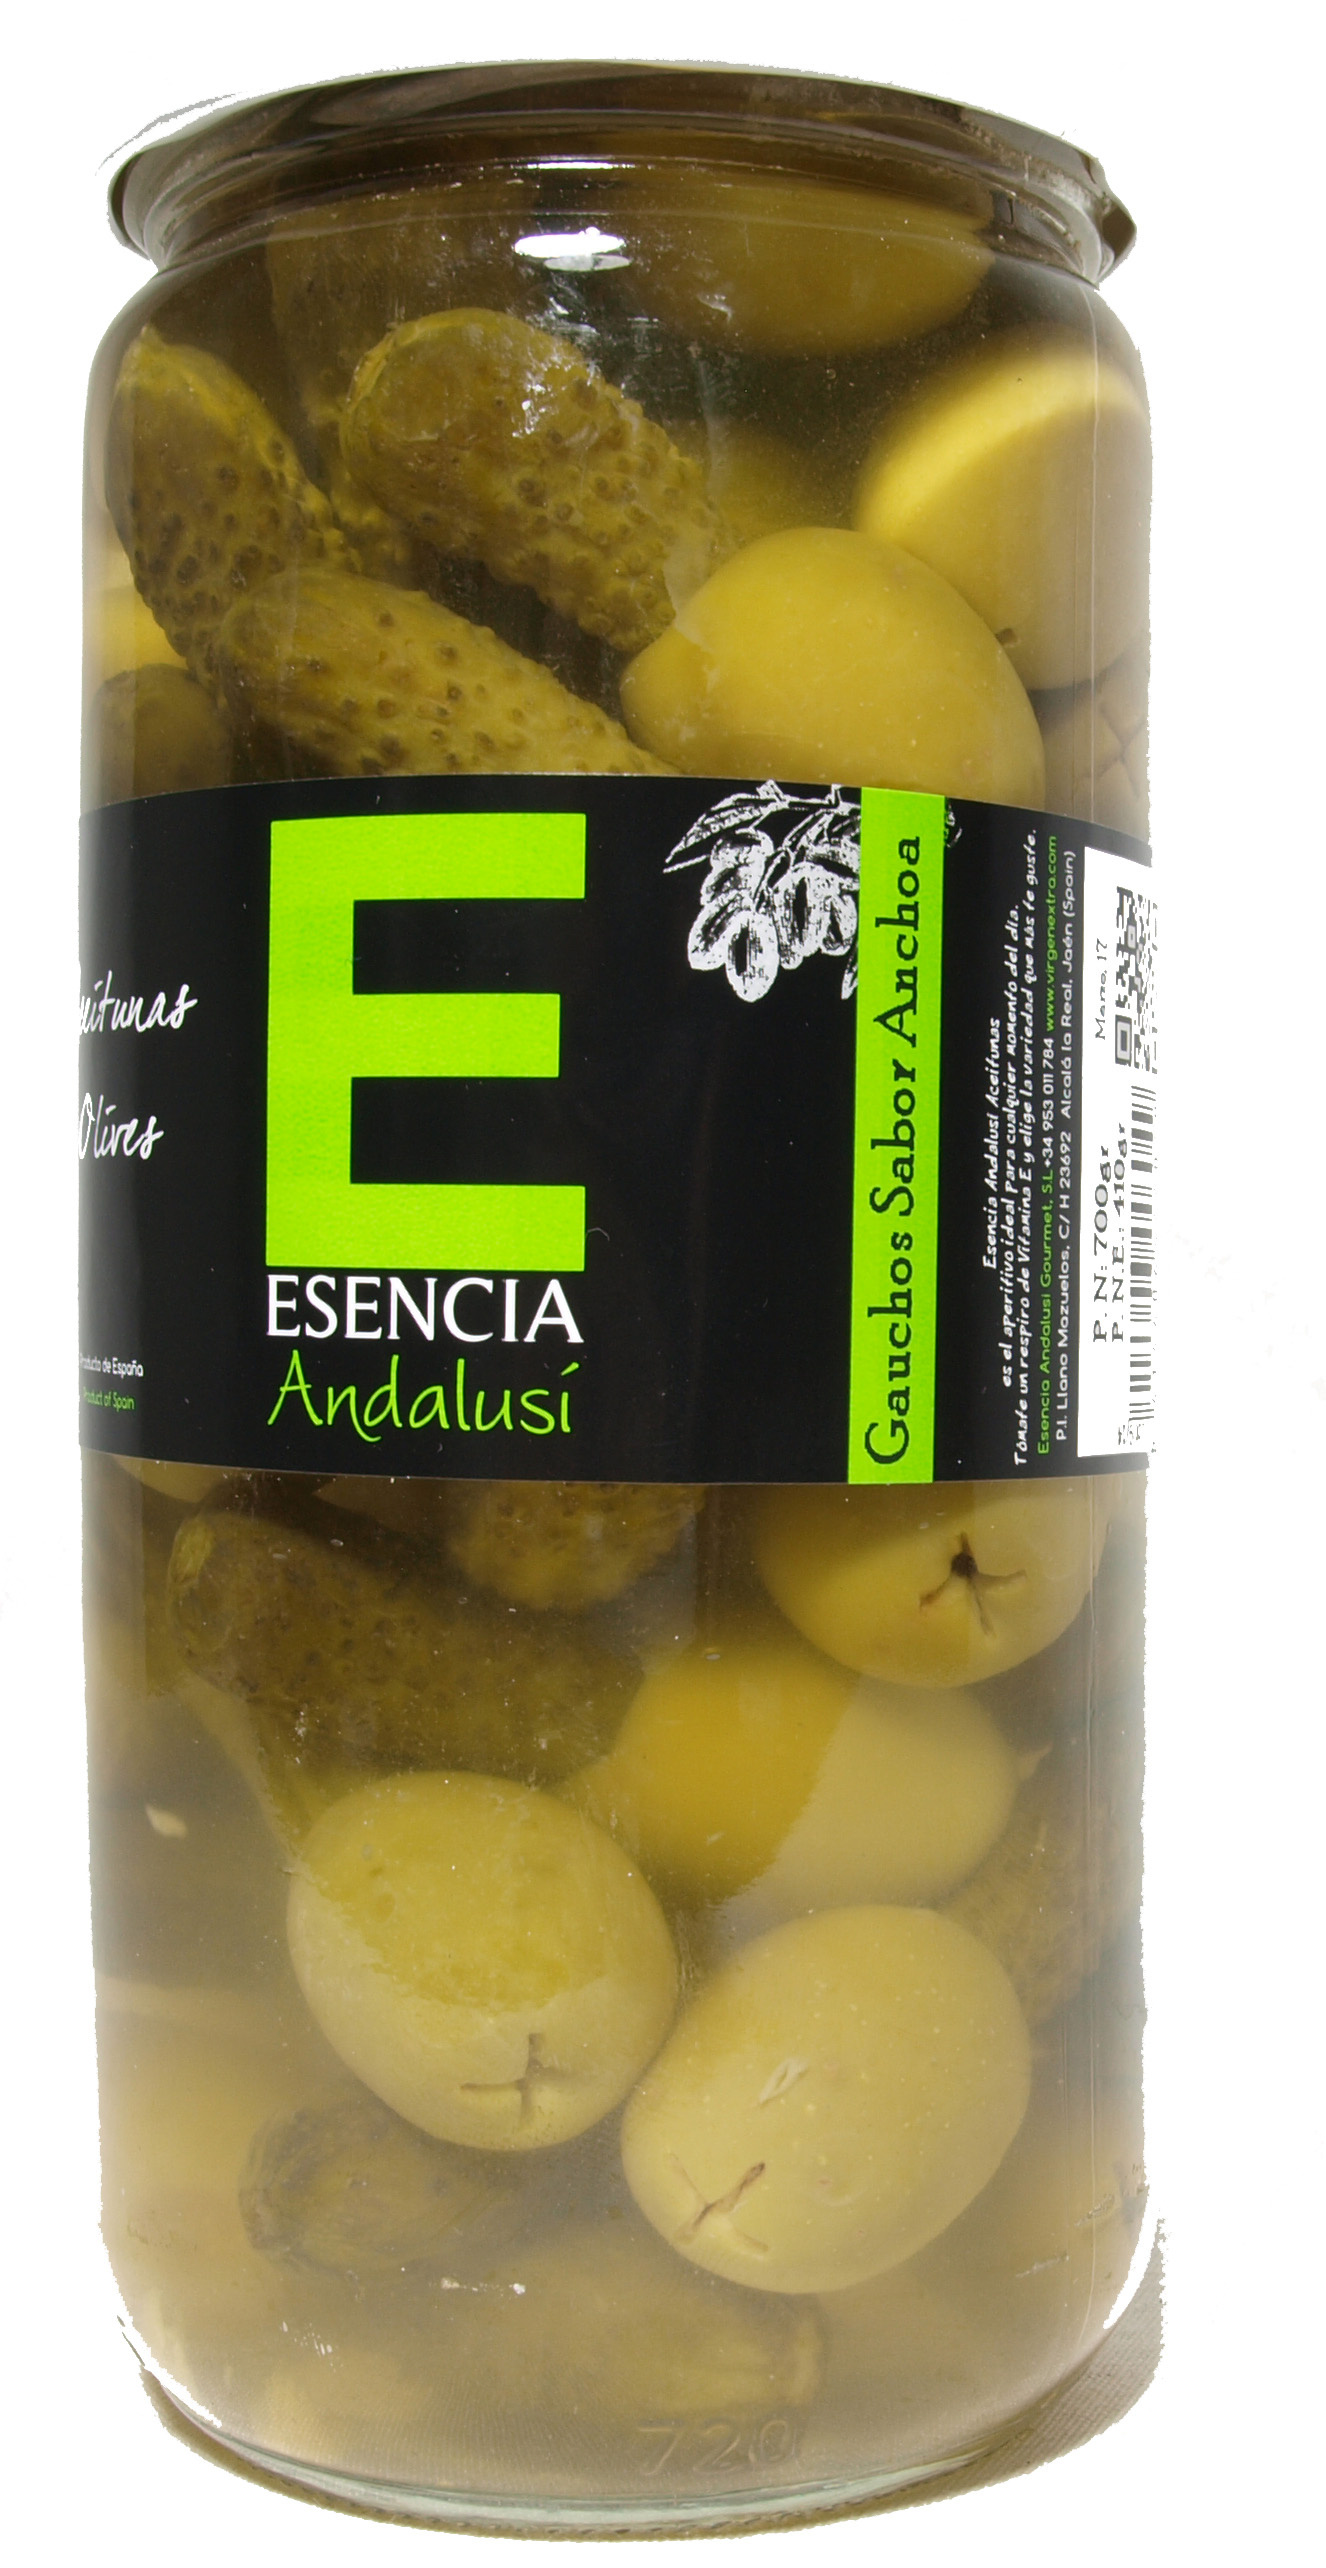 Aceitunas con pepinillos "Esencia Andalusí" - Product - es